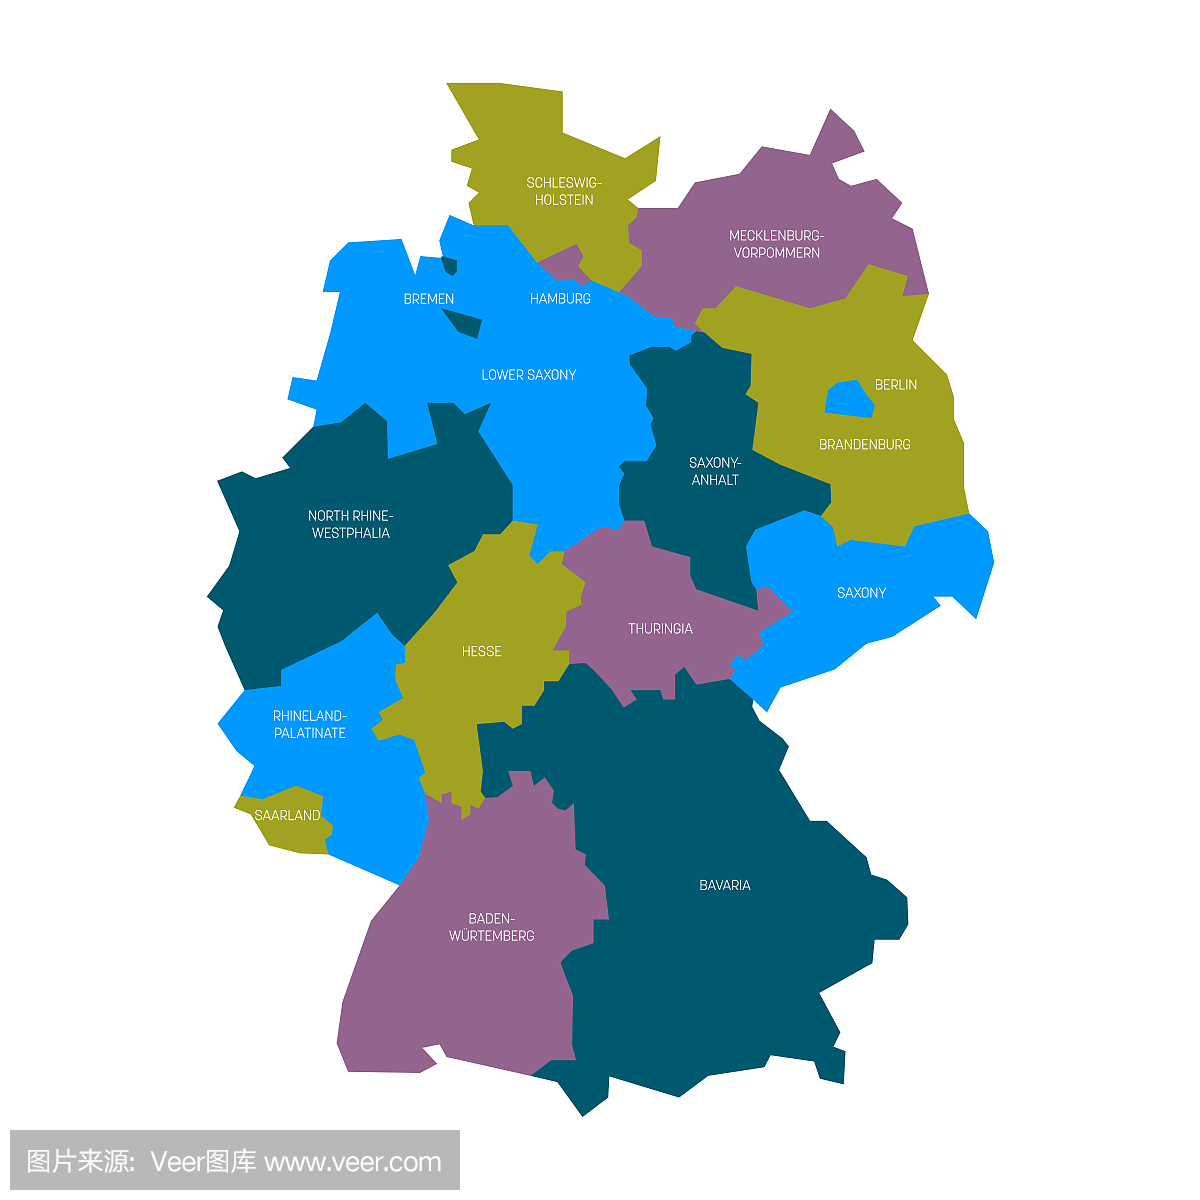 德国地图分为13个联邦州和3个城邦 - 柏林,不莱